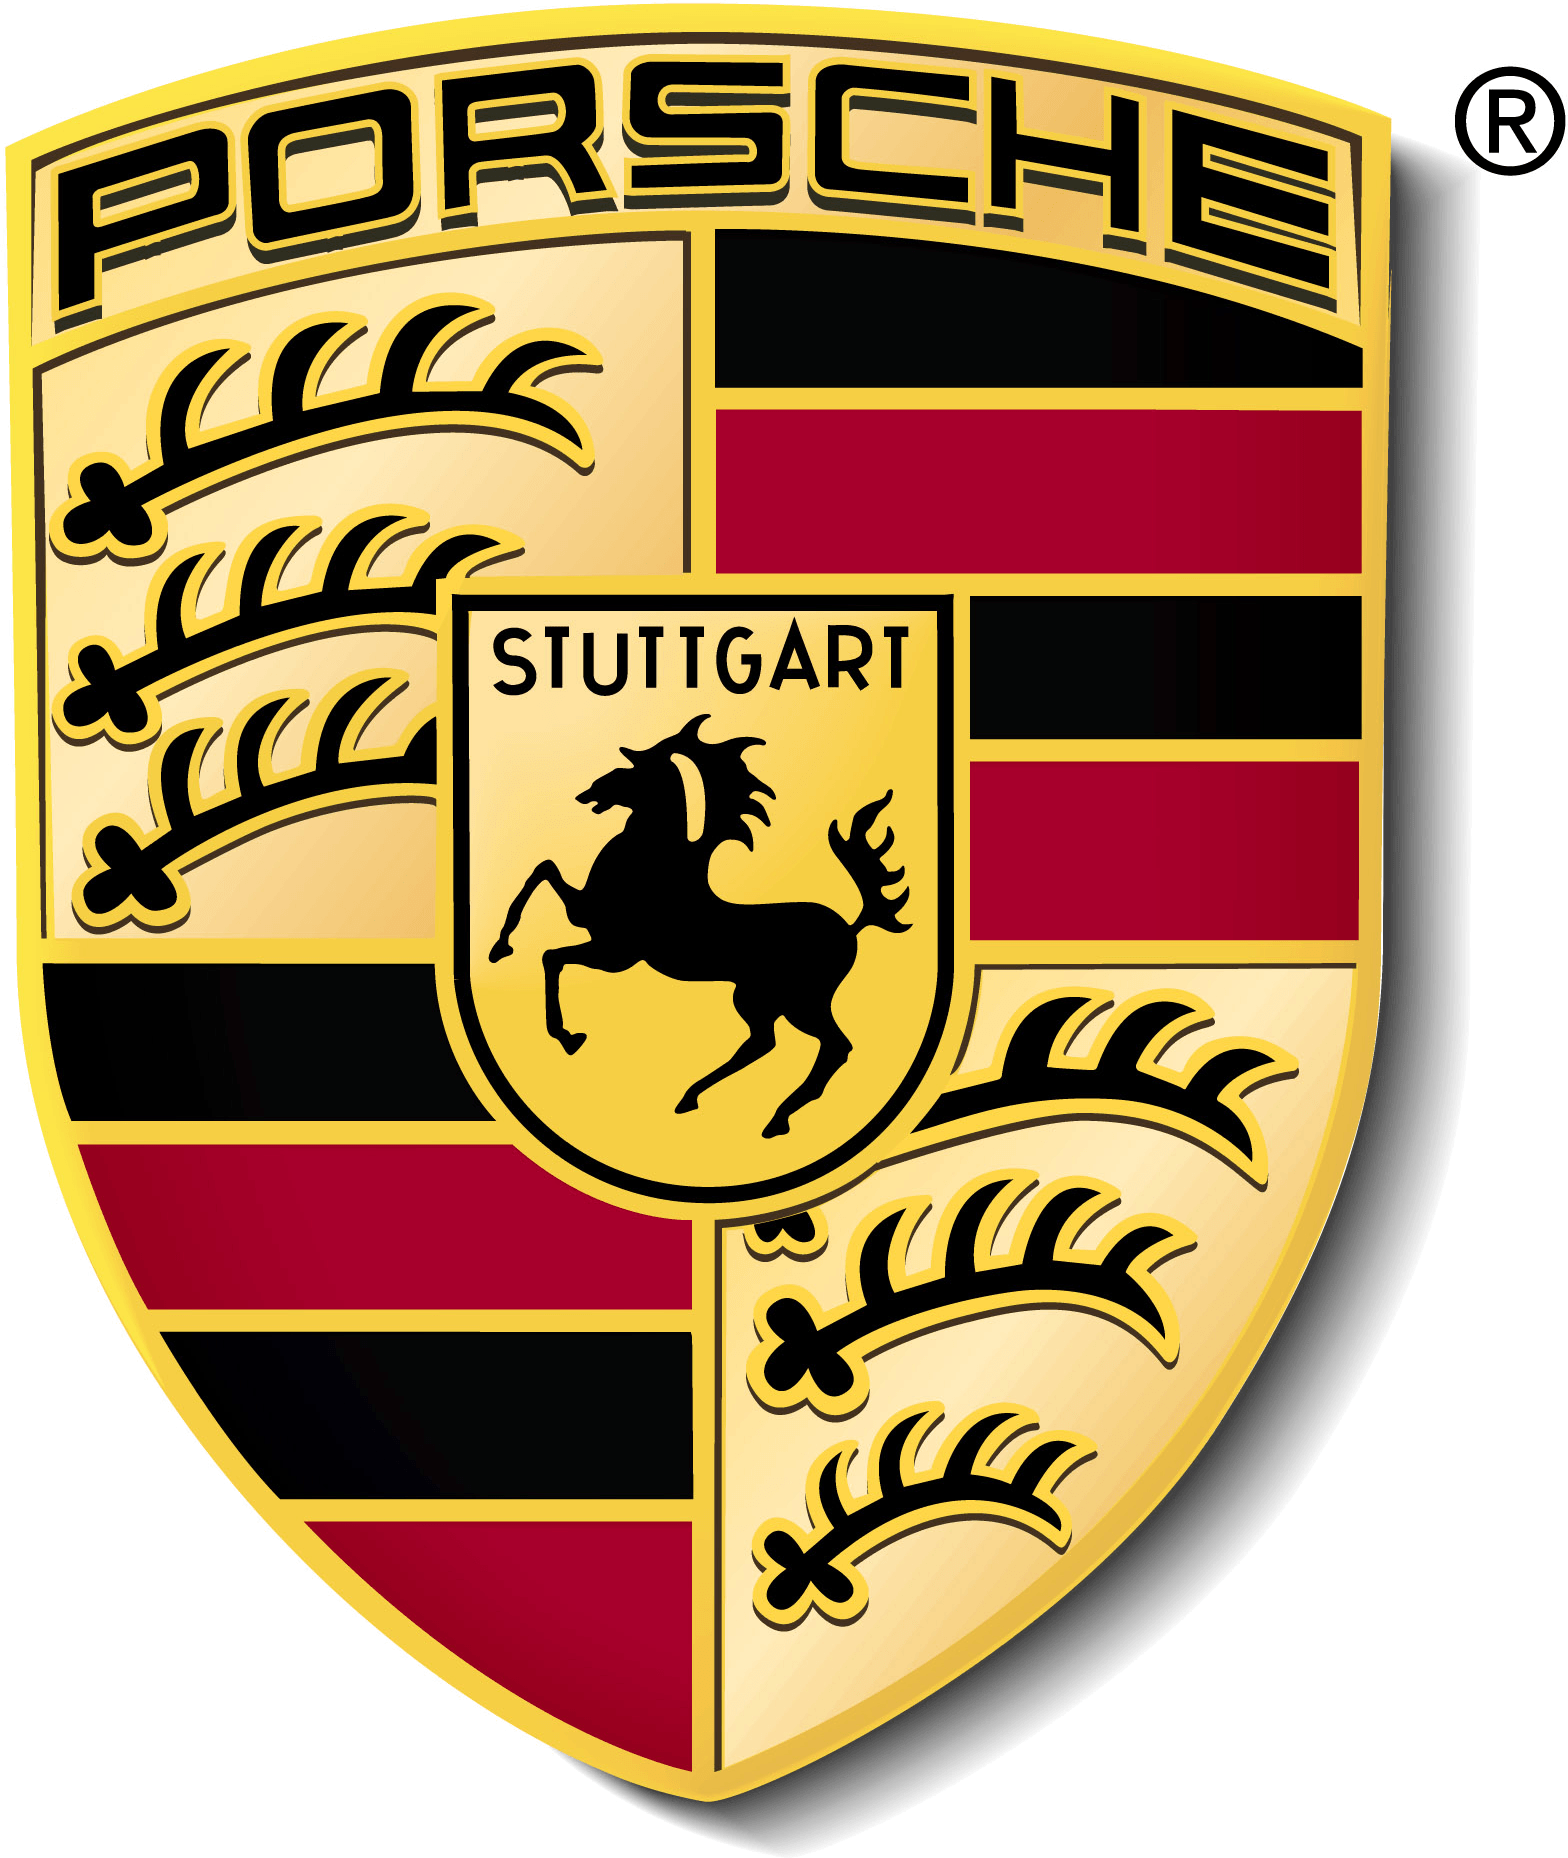 Porshe Logo - Porsche logo.png